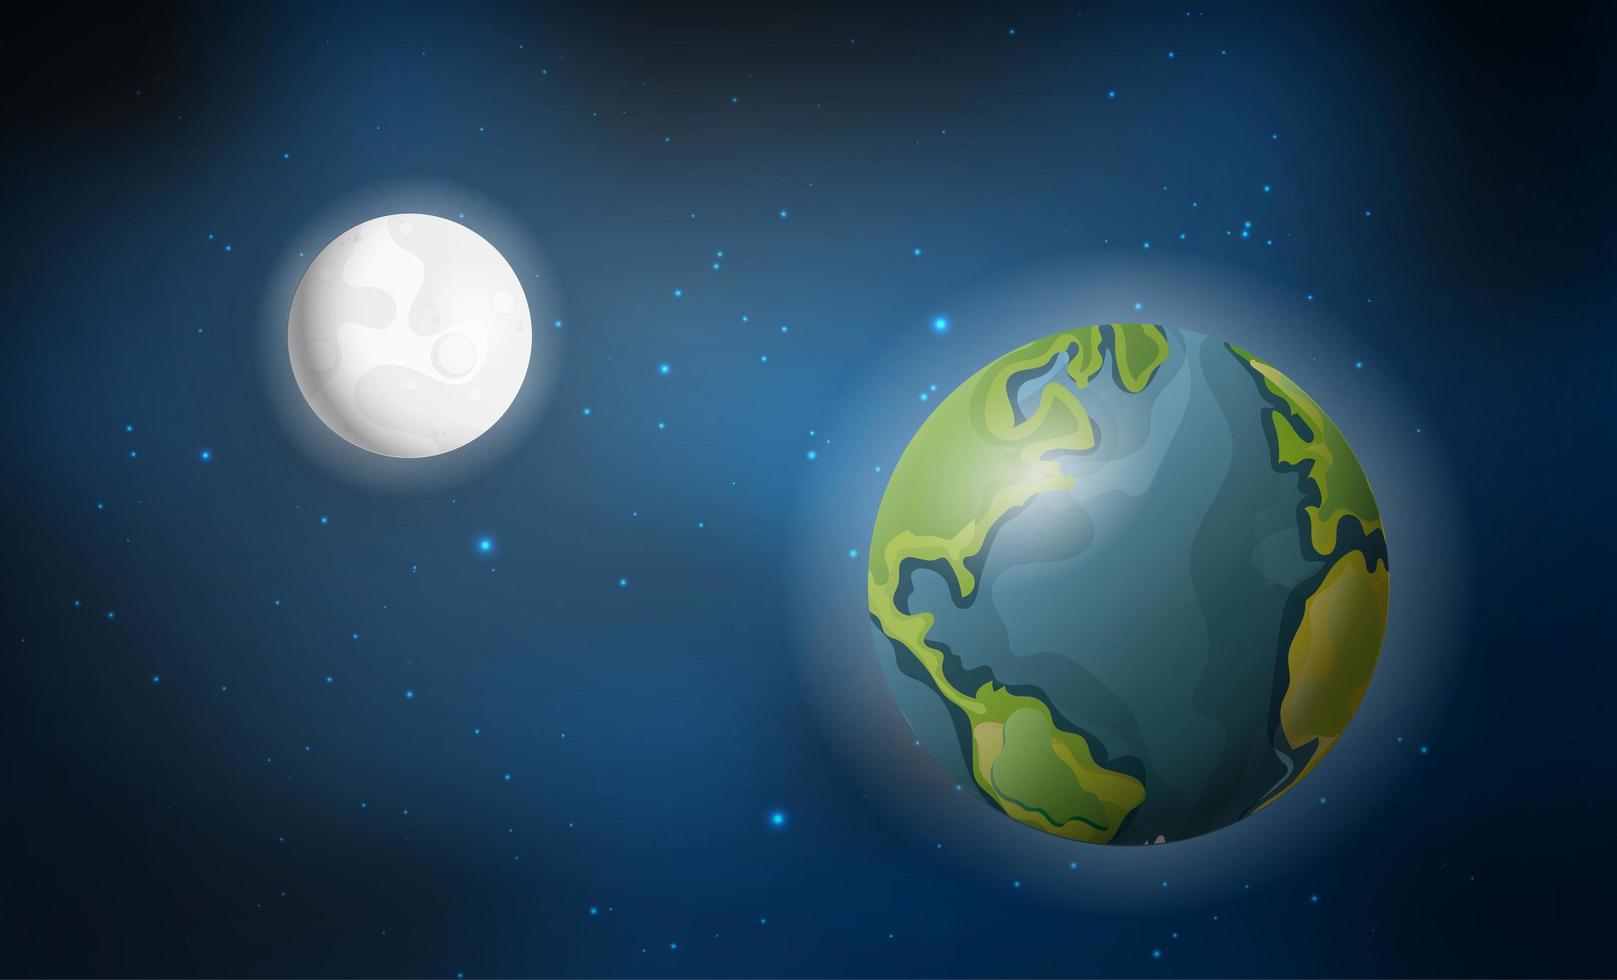 realistico pianeta terra e luna tra le stelle. spazio. illustrazione vettoriale dettagliata.